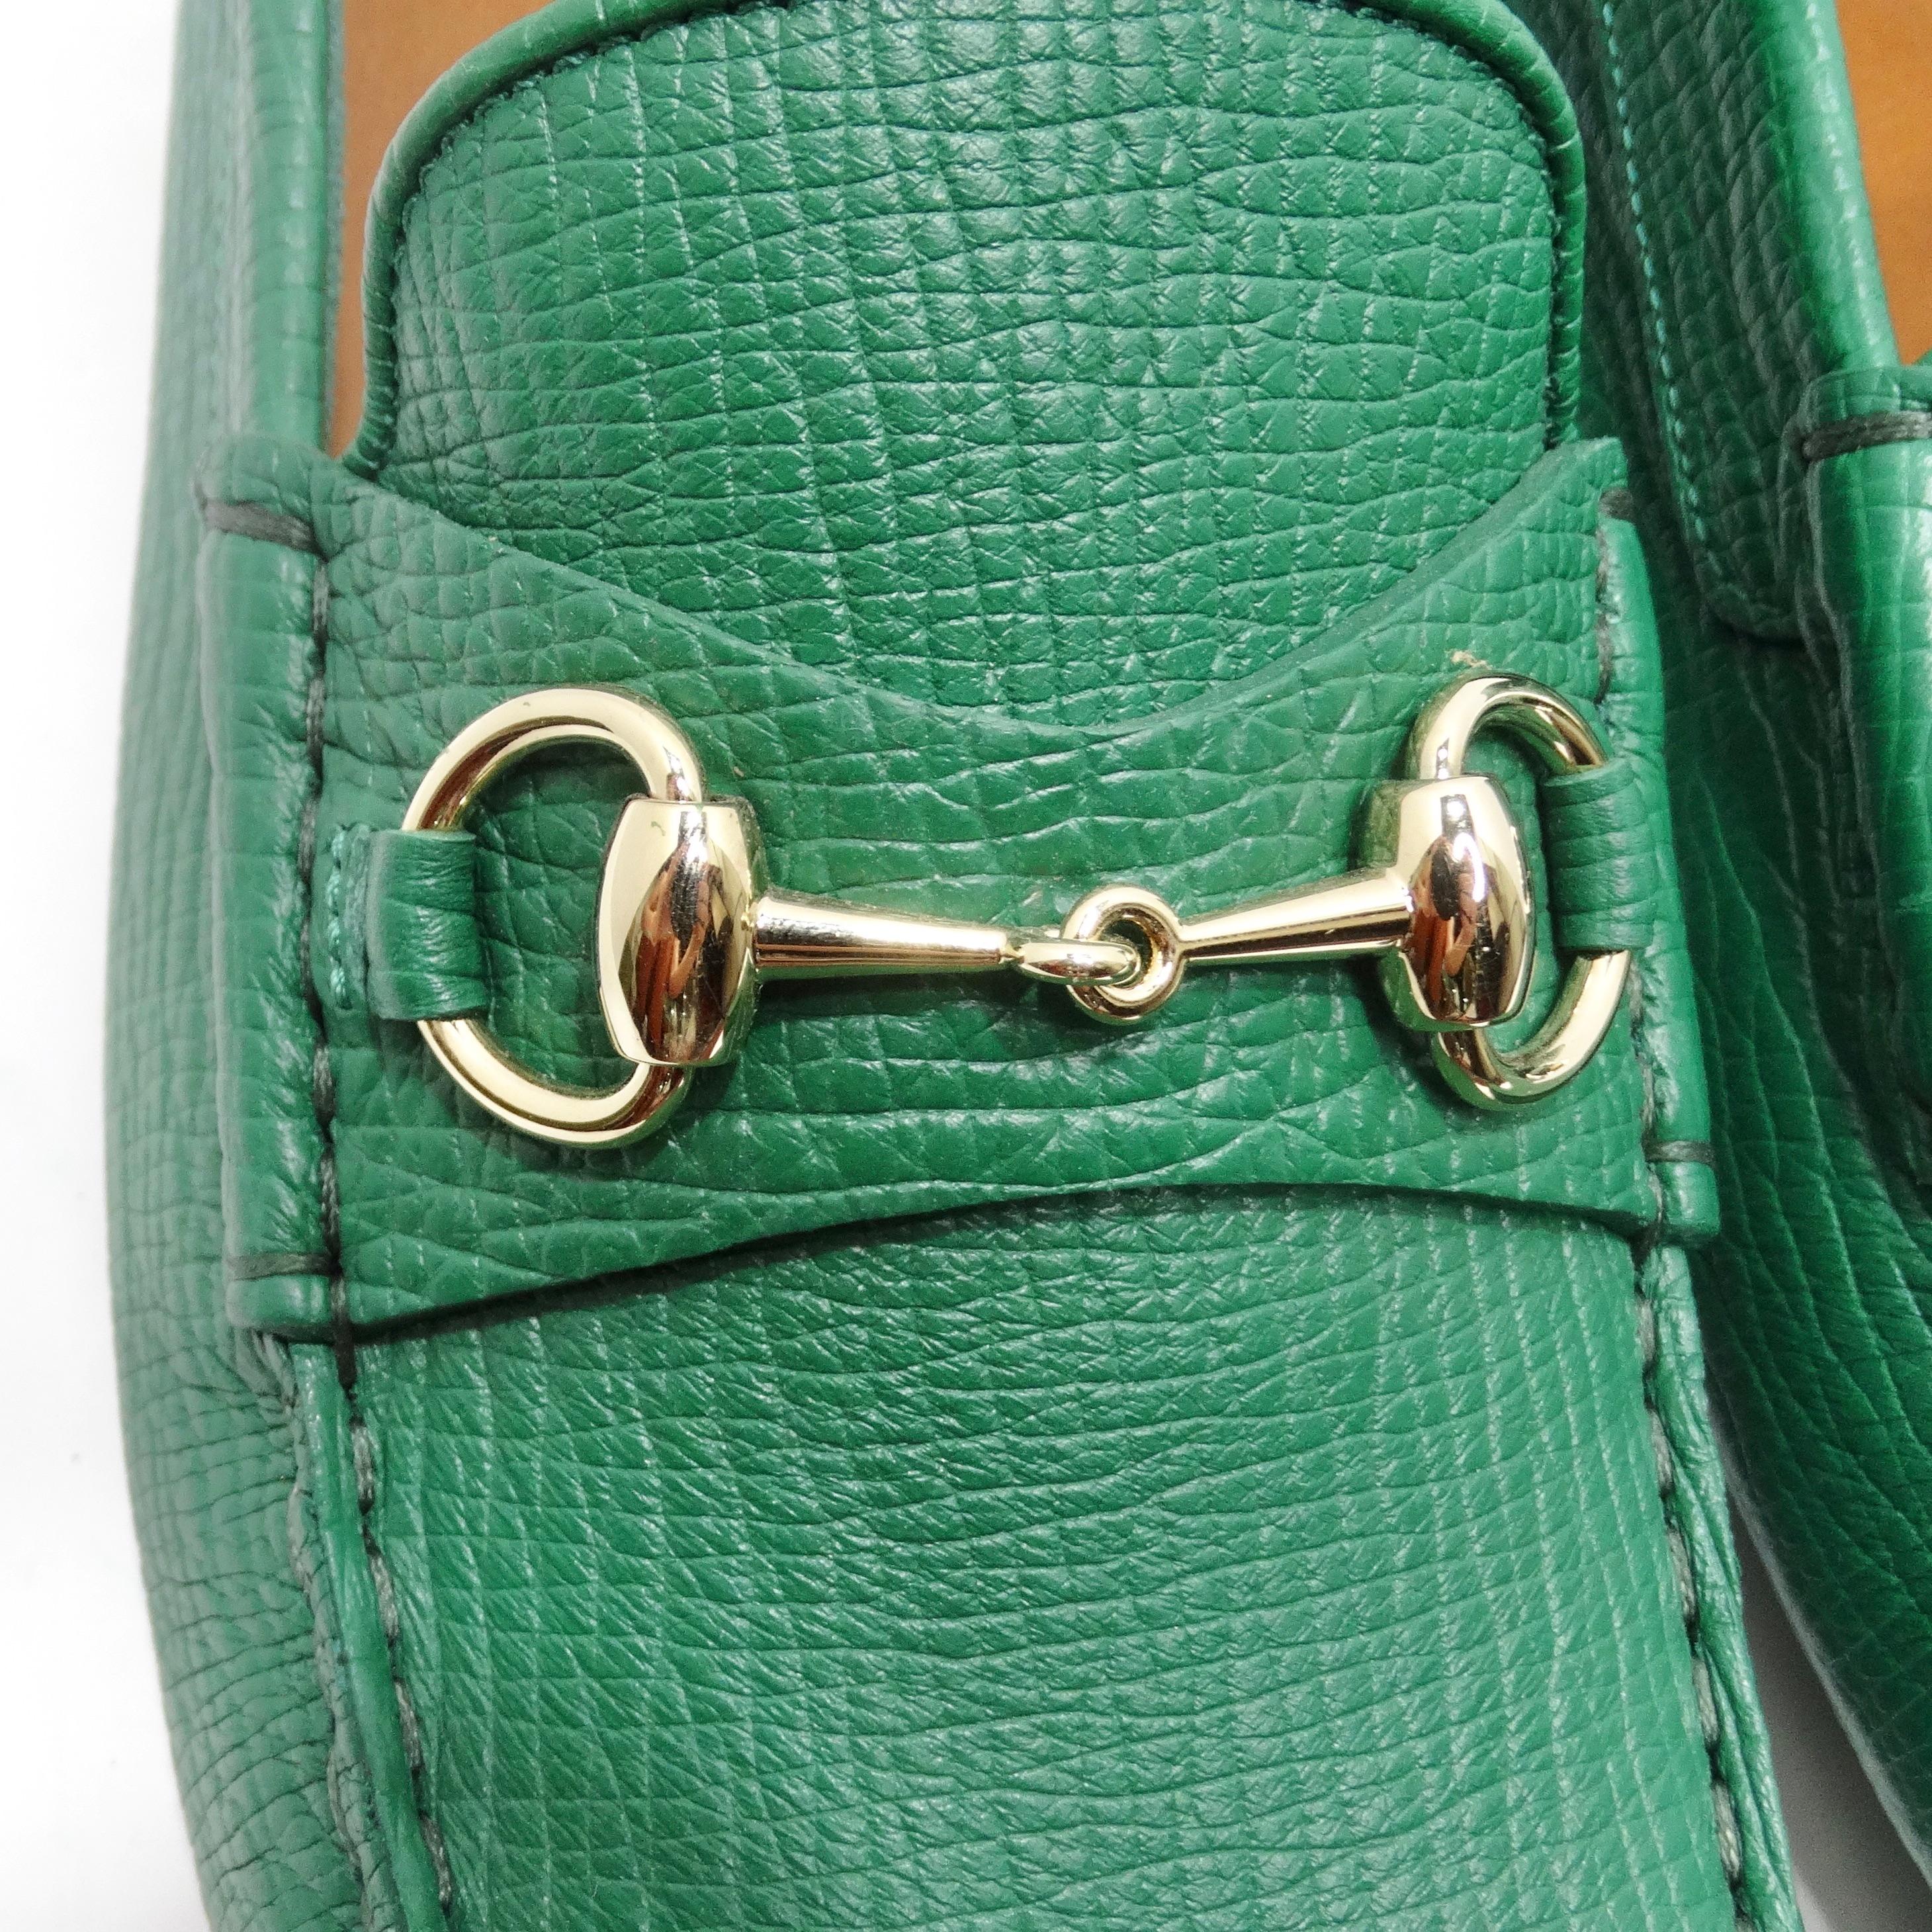 Entrez dans le luxe avec les mocassins Gucci Horsebit Driver Loafers en vert - une pièce classique qui allie un style intemporel à la touche inimitable de sophistication Gucci. Ces mocassins ne sont pas de simples chaussures, ils sont une